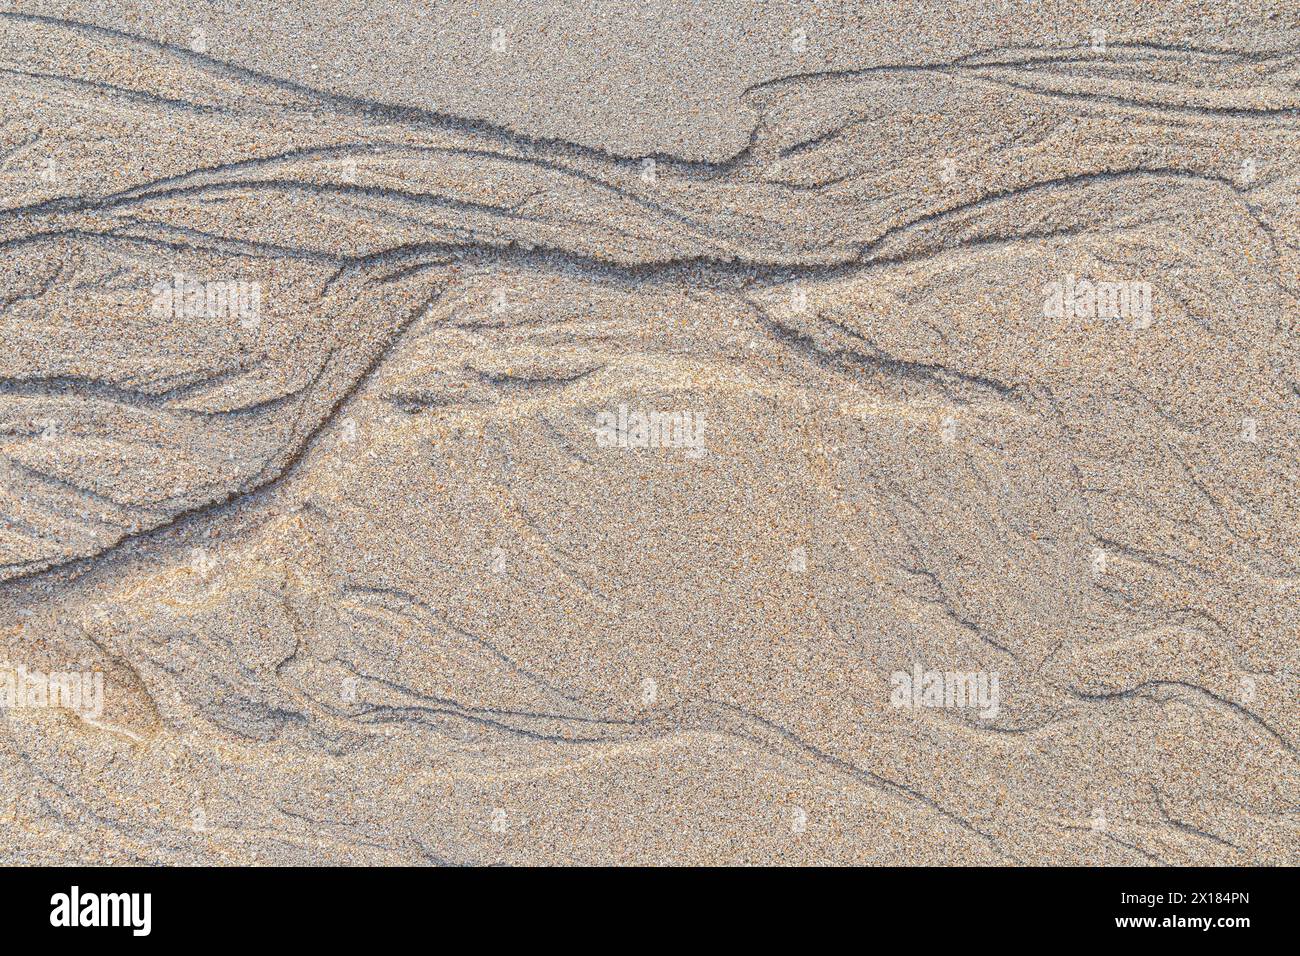 Forme e motivi astratti nella sabbia granulosa sulla spiaggia in una giornata di sole, vista dall'alto. Sfondo sabbioso naturale con trama astratta, vista dall'alto. Foto Stock